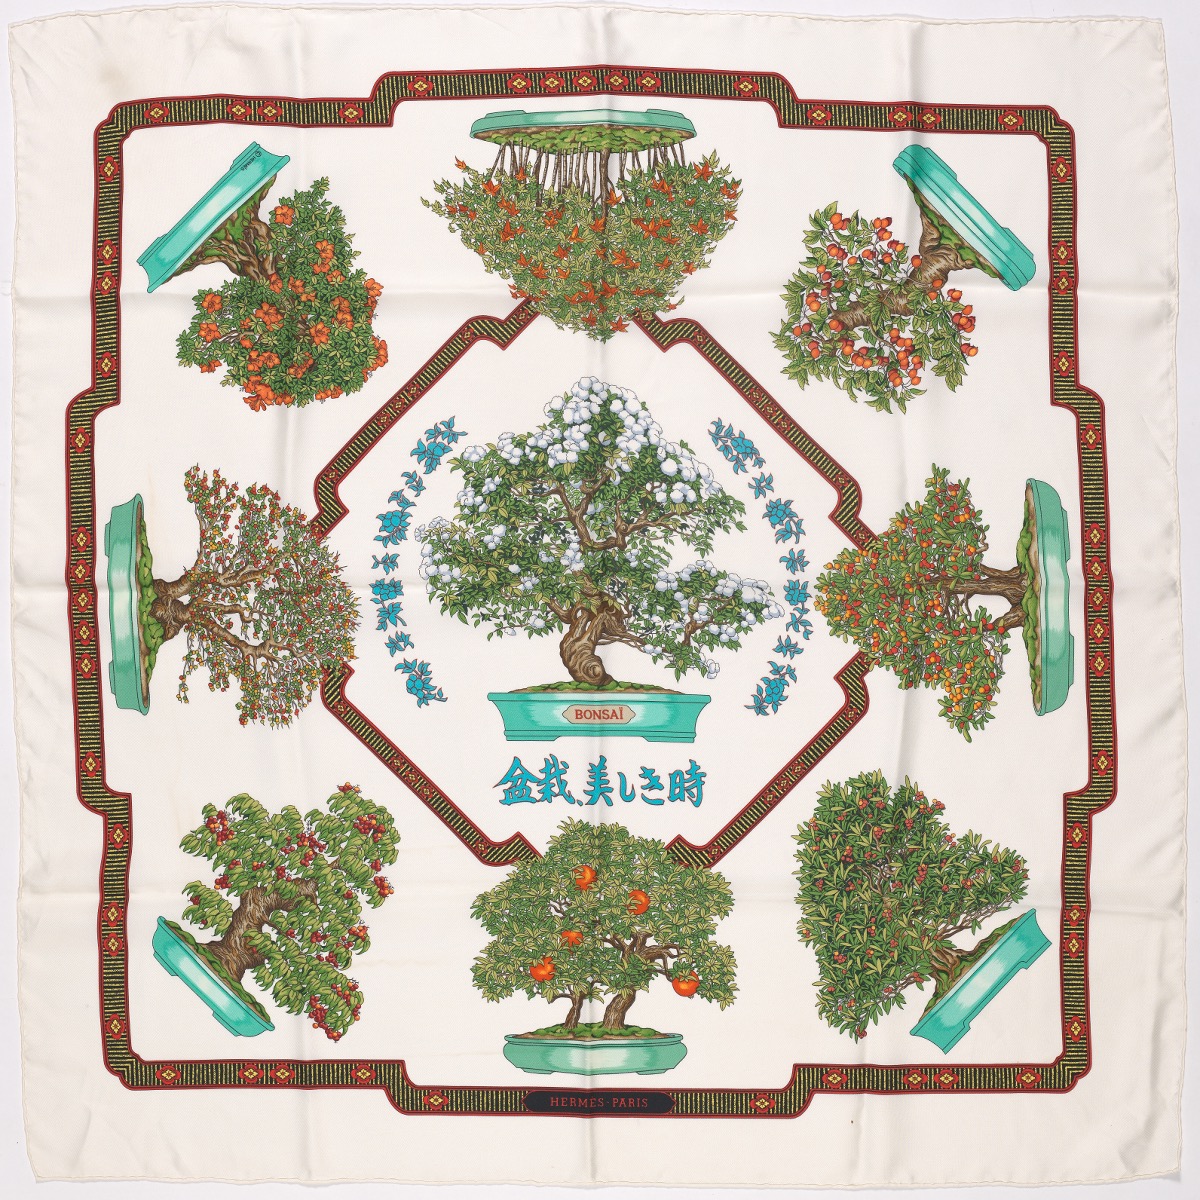 Hermes Silk Twill, "Les Beaux Jours de Bonsai" Designed by Catherine